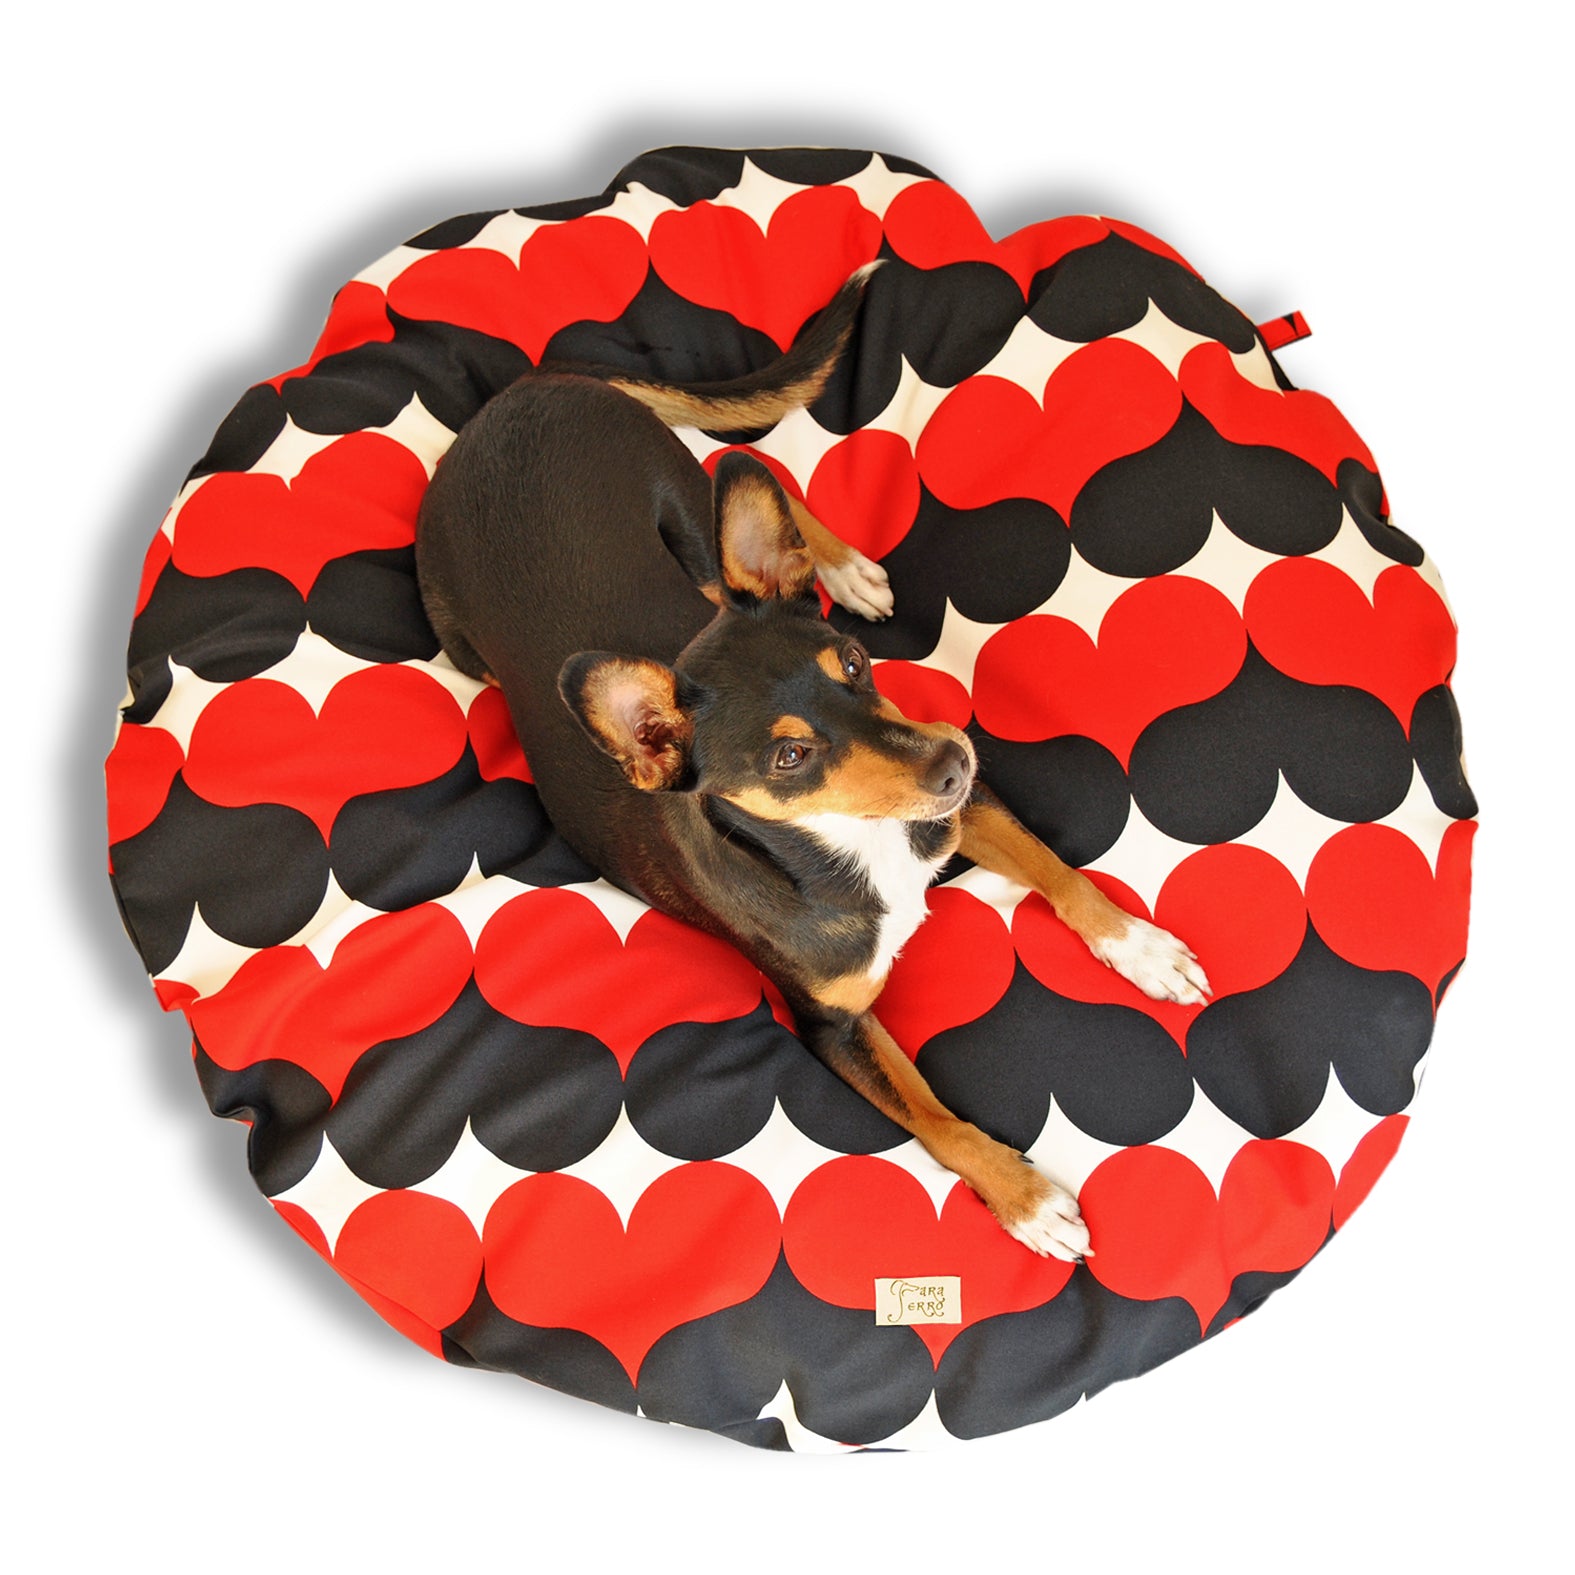 Rundes Hundebett im Retromuster für sehr kleine Hunde mit Herzen in Rot und Schwarzbedruckt